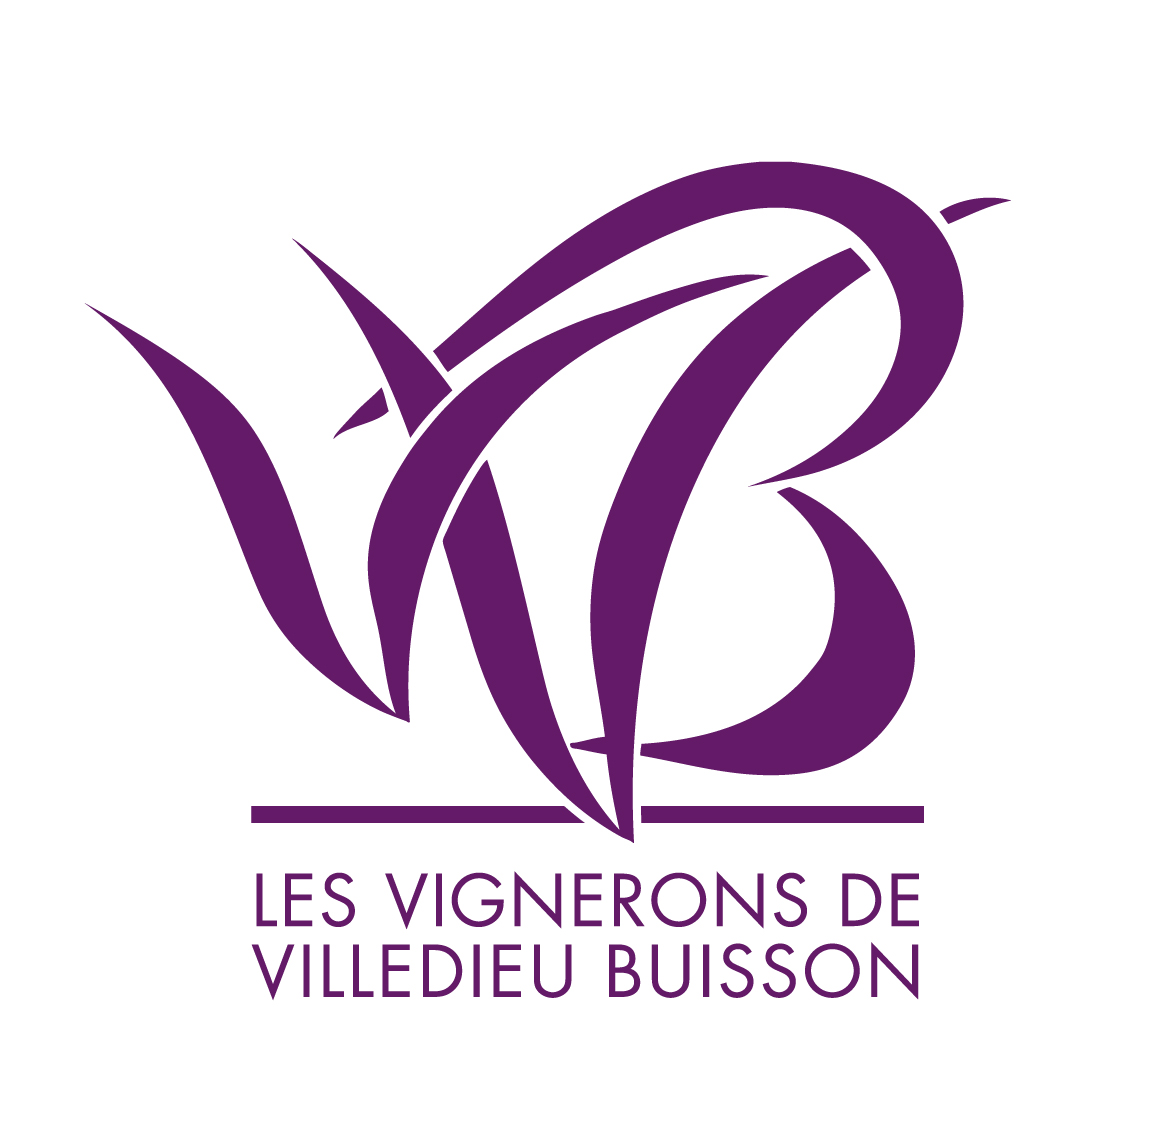 Les Vignerons de Villedieu Buisson